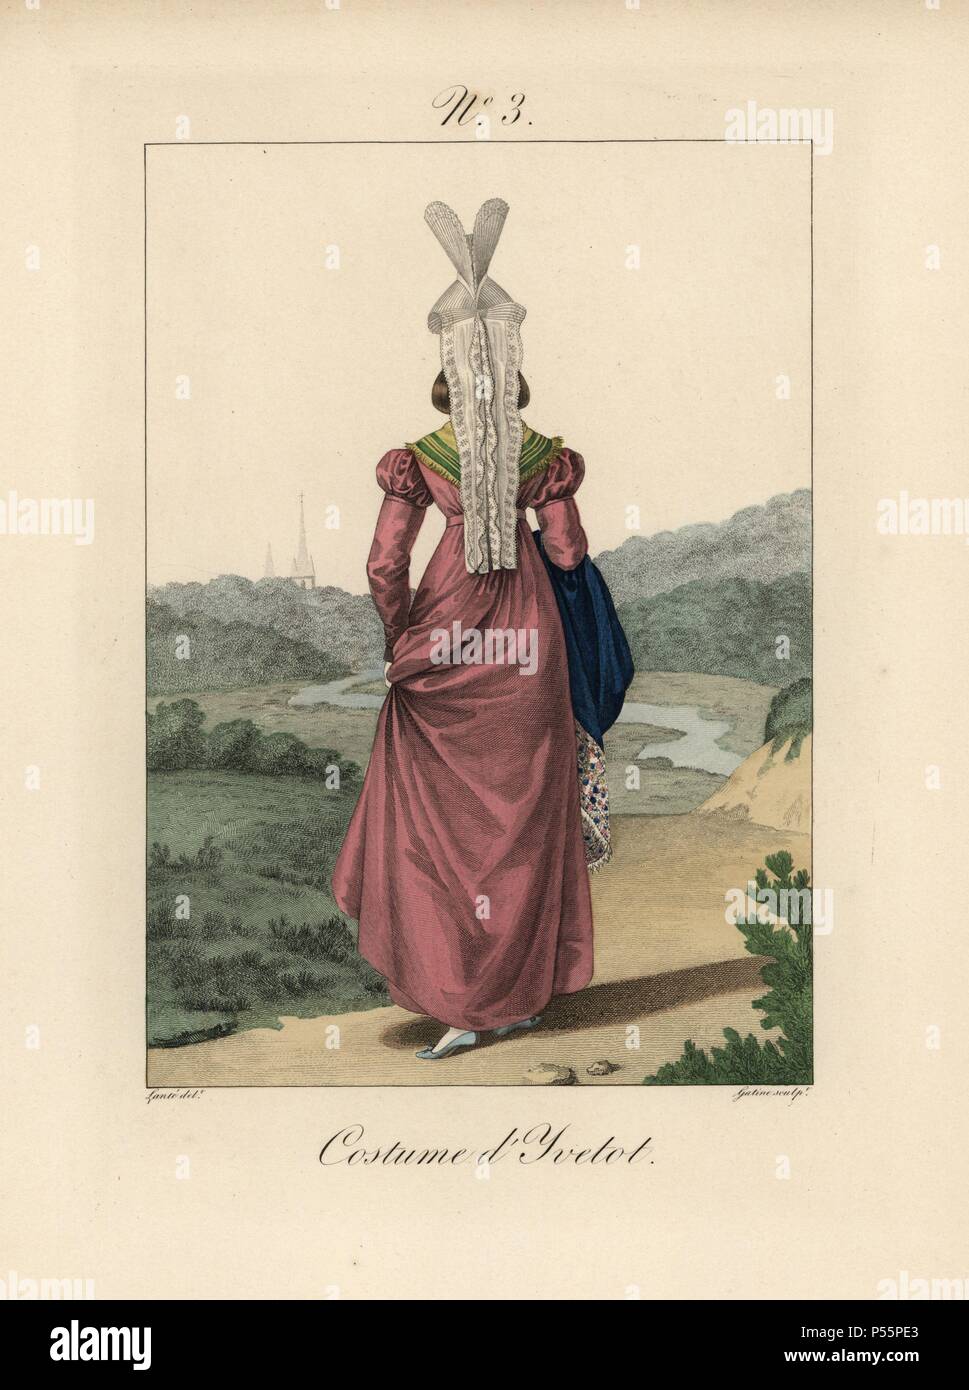 Eine Frau in langen Pflaume Kleid mit blauem Stahl aus dem Dorf von Yvetot, Rückansicht, zeigt die lange spitze Schwänze aus Ihrem Motorhaube. Handcolorierte mode Platte Illustration von LANTE von Gatine von louis-marie's Lante' Kostüme des Gravierten femmes du Pays de Caux", 1827/1885. Mit ihren hohen Elsässischen spitze Hüte, die Frauen von Caux und der Normandie waren berühmt für die Eleganz und Stil. Stockfoto